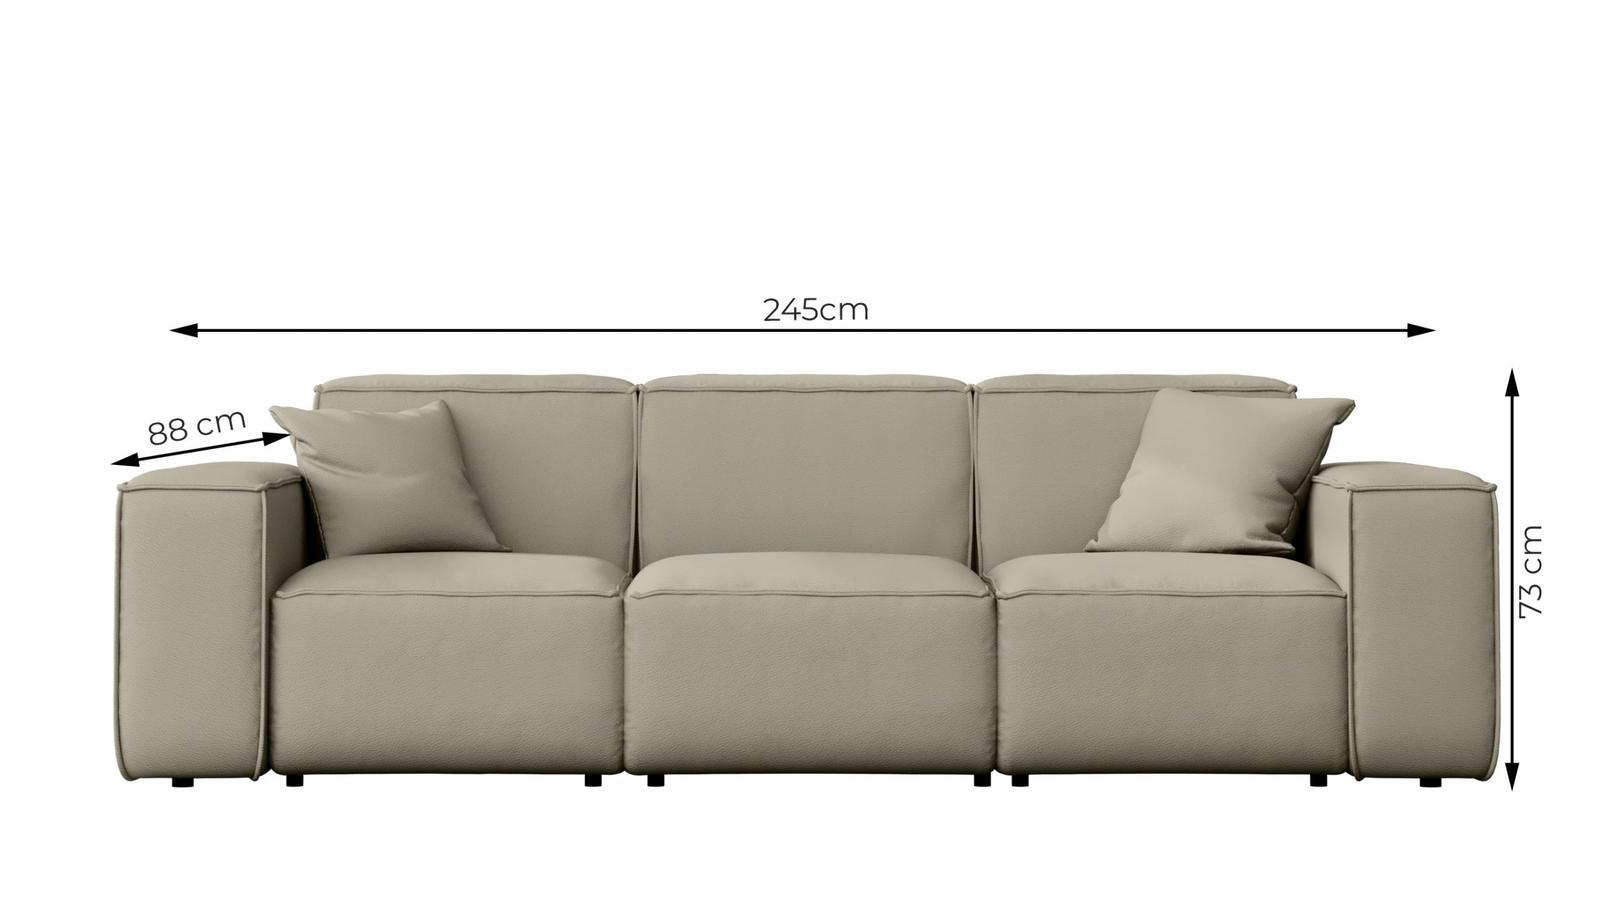 Sofa ogrodowa MALIBU 245x103x88 cm wodoodporna UV 3-os + 2 poduszki do ogrodu jasnoszara nr. 3